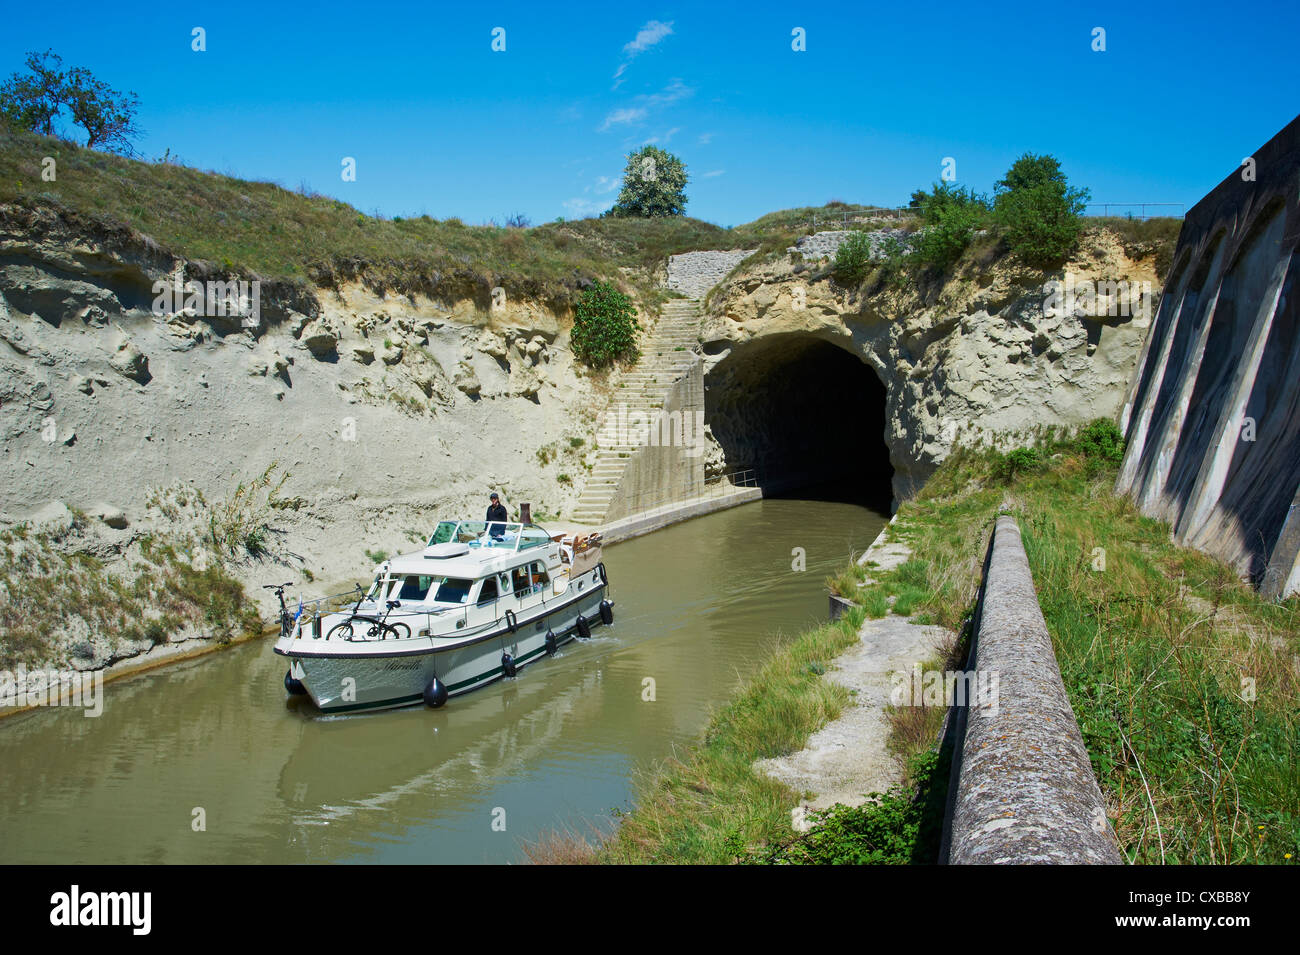 Tunnel di Malpas, la navigazione e la crociera sul Canal du Midi, Sito Patrimonio Mondiale dell'UNESCO, Herault, Languedoc Roussillon, Francia Foto Stock